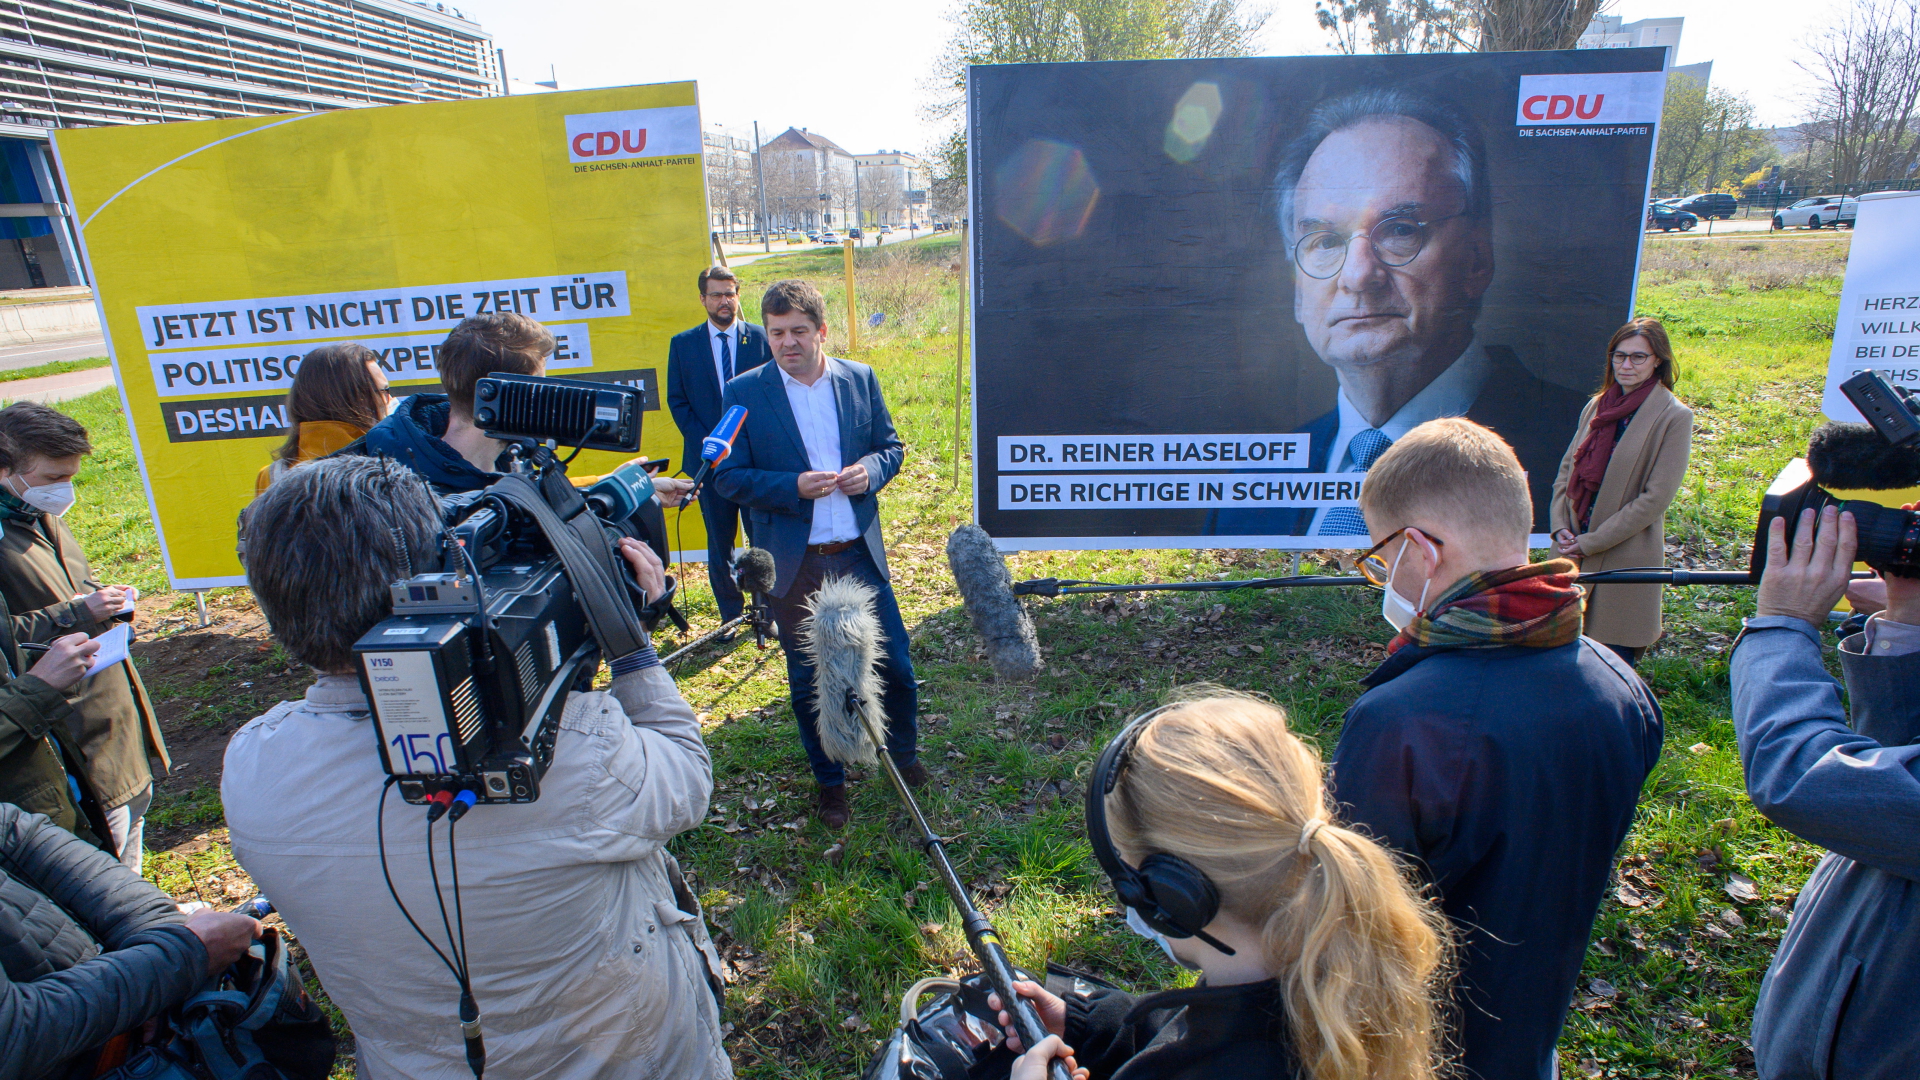 Ein Wahlplakat der CDU, auf dem ein Porträt des Ministerpräsidenten des Landes Sachsen-Anhalt, Haseloff, zu sehen ist | dpa